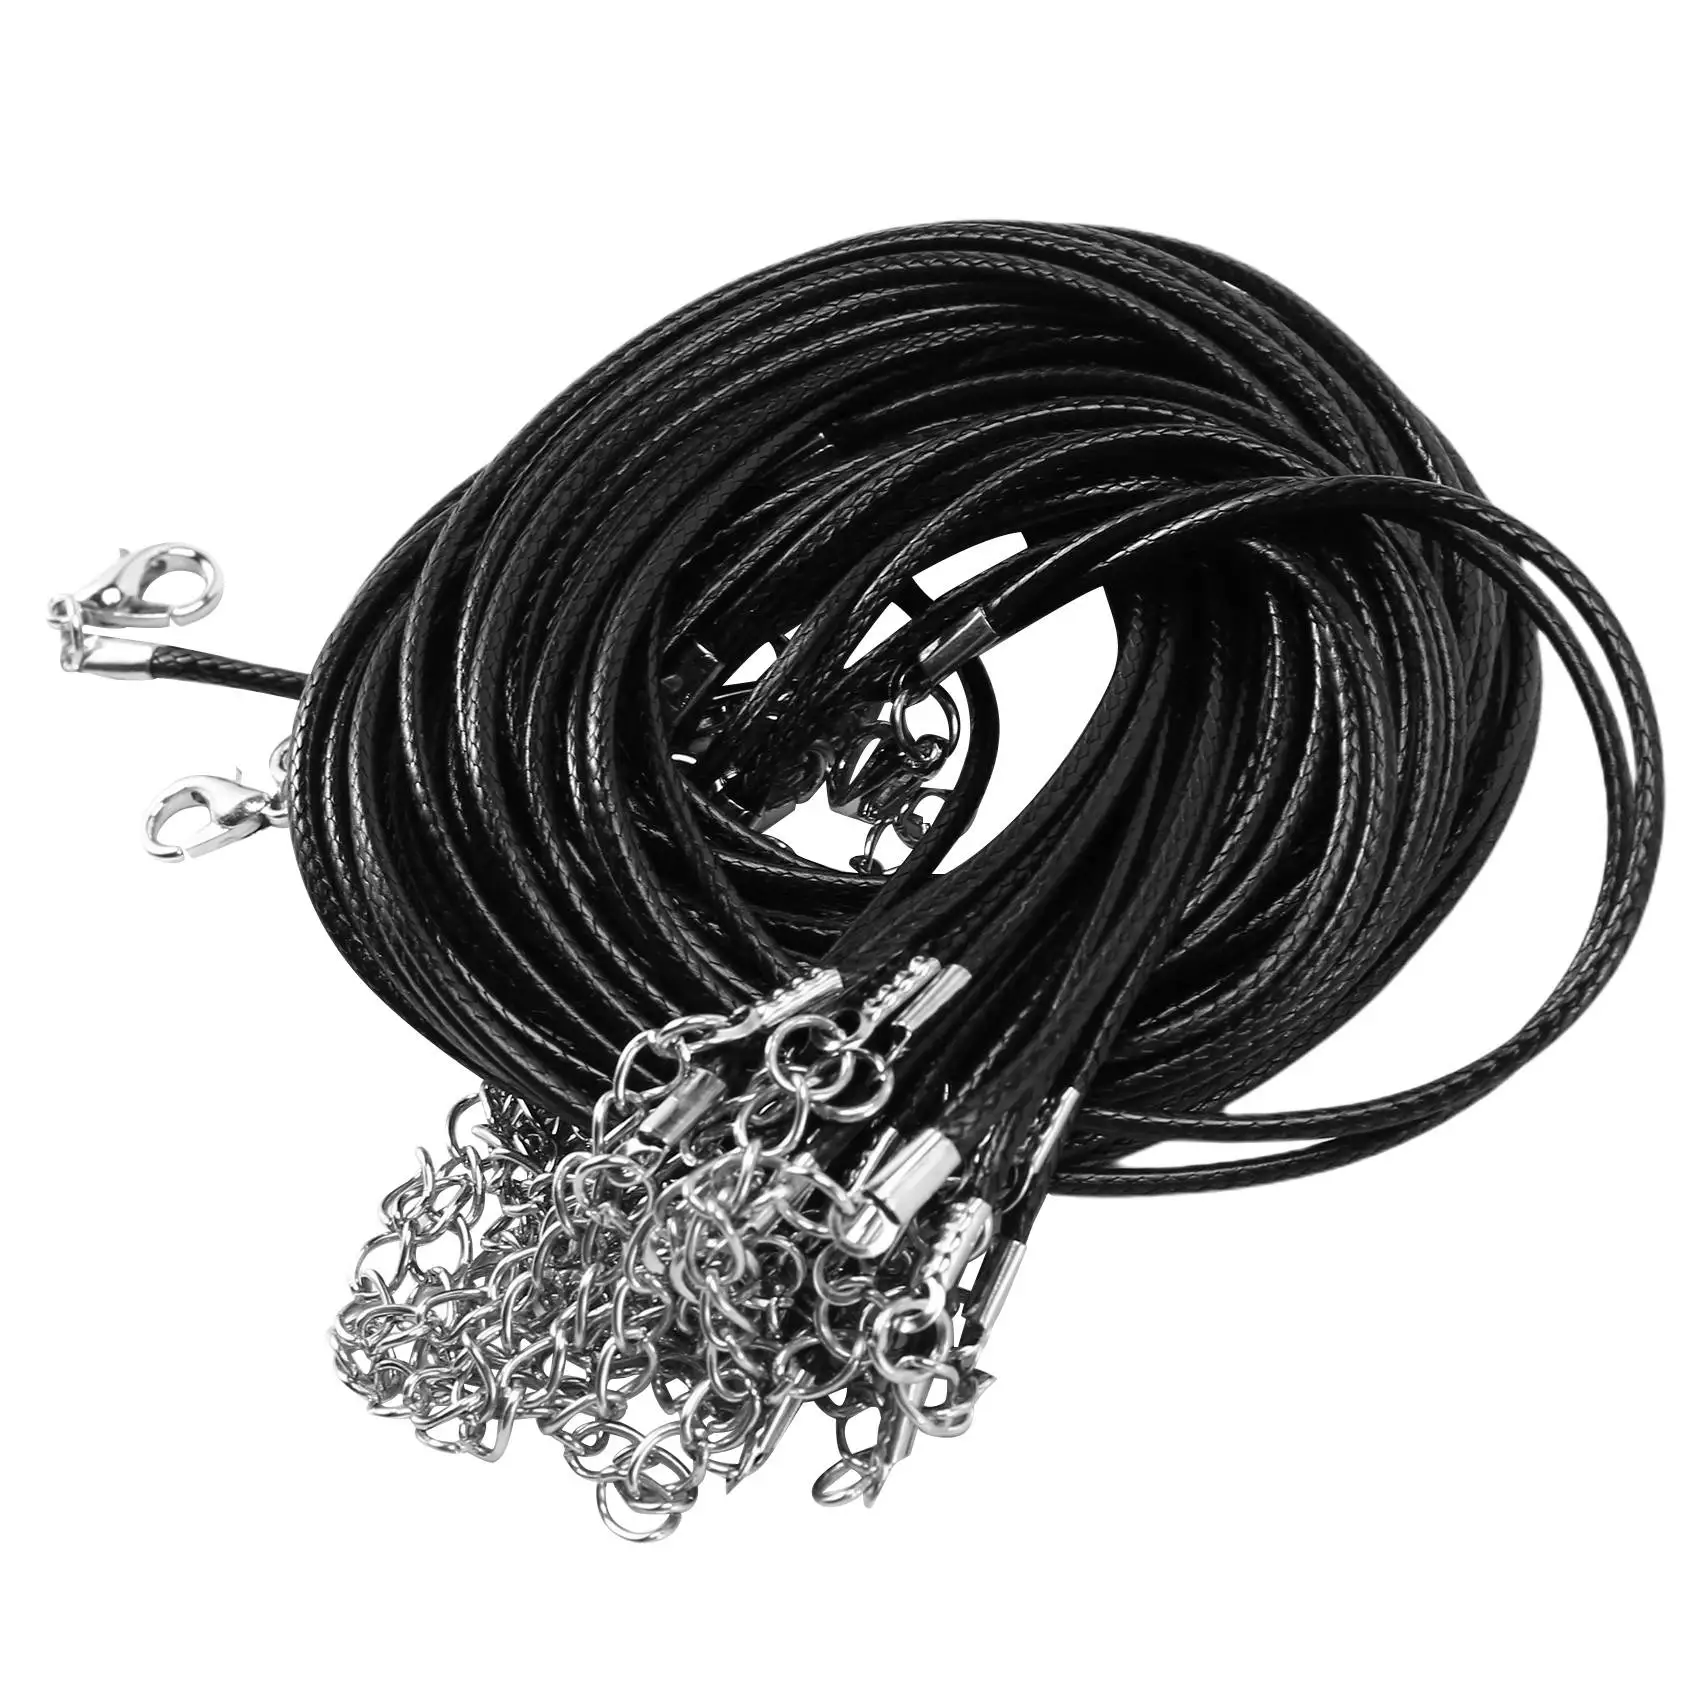 

20 шт., 20 дюймов, черный вощеный шнур для ожерелья с застежкой, для изготовления браслетов, ожерелий и ювелирных изделий